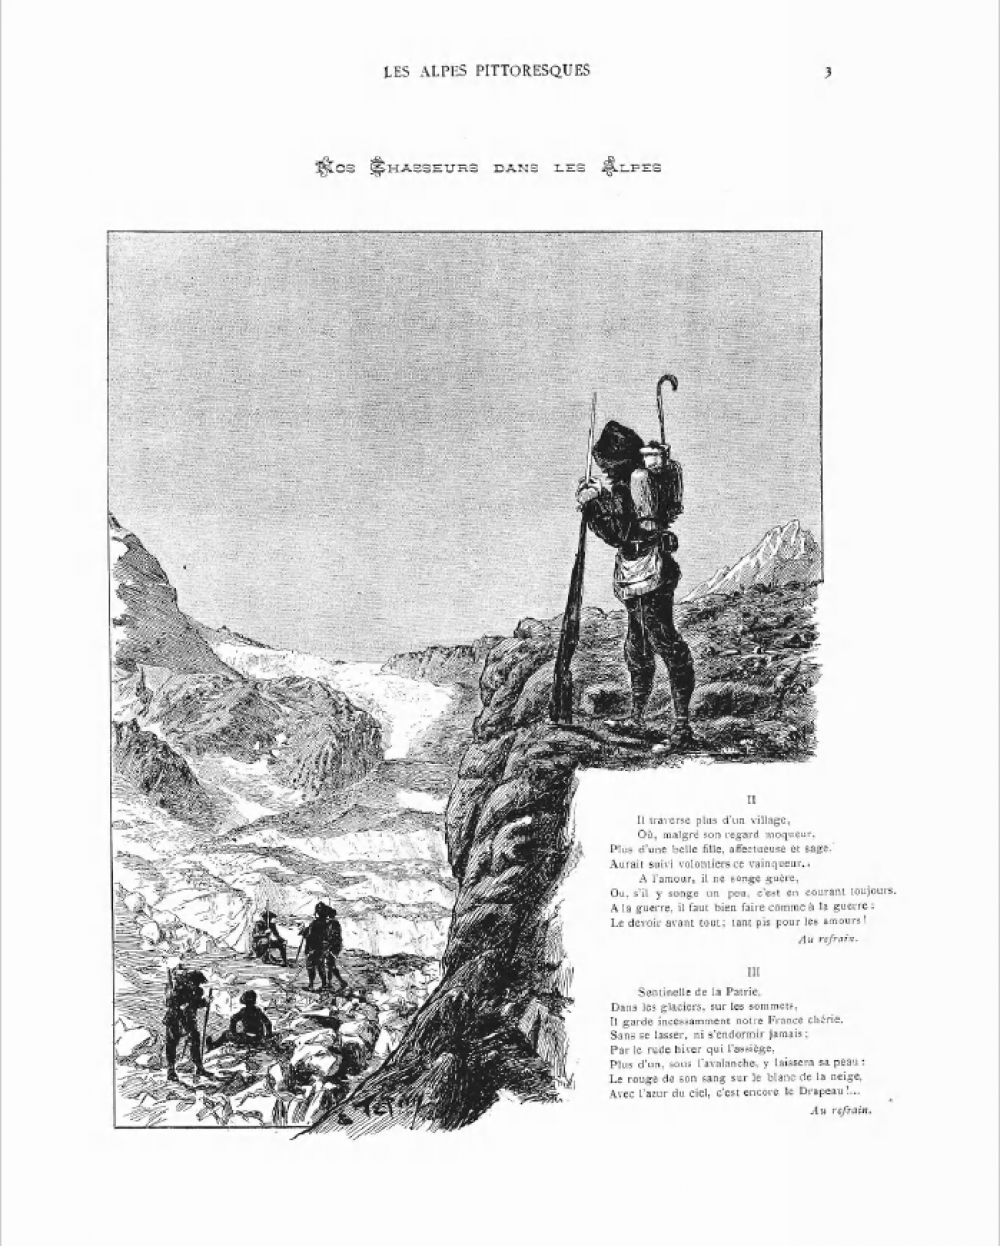 Les Alpes pittoresques, P.3 du 1e juillet 1901.